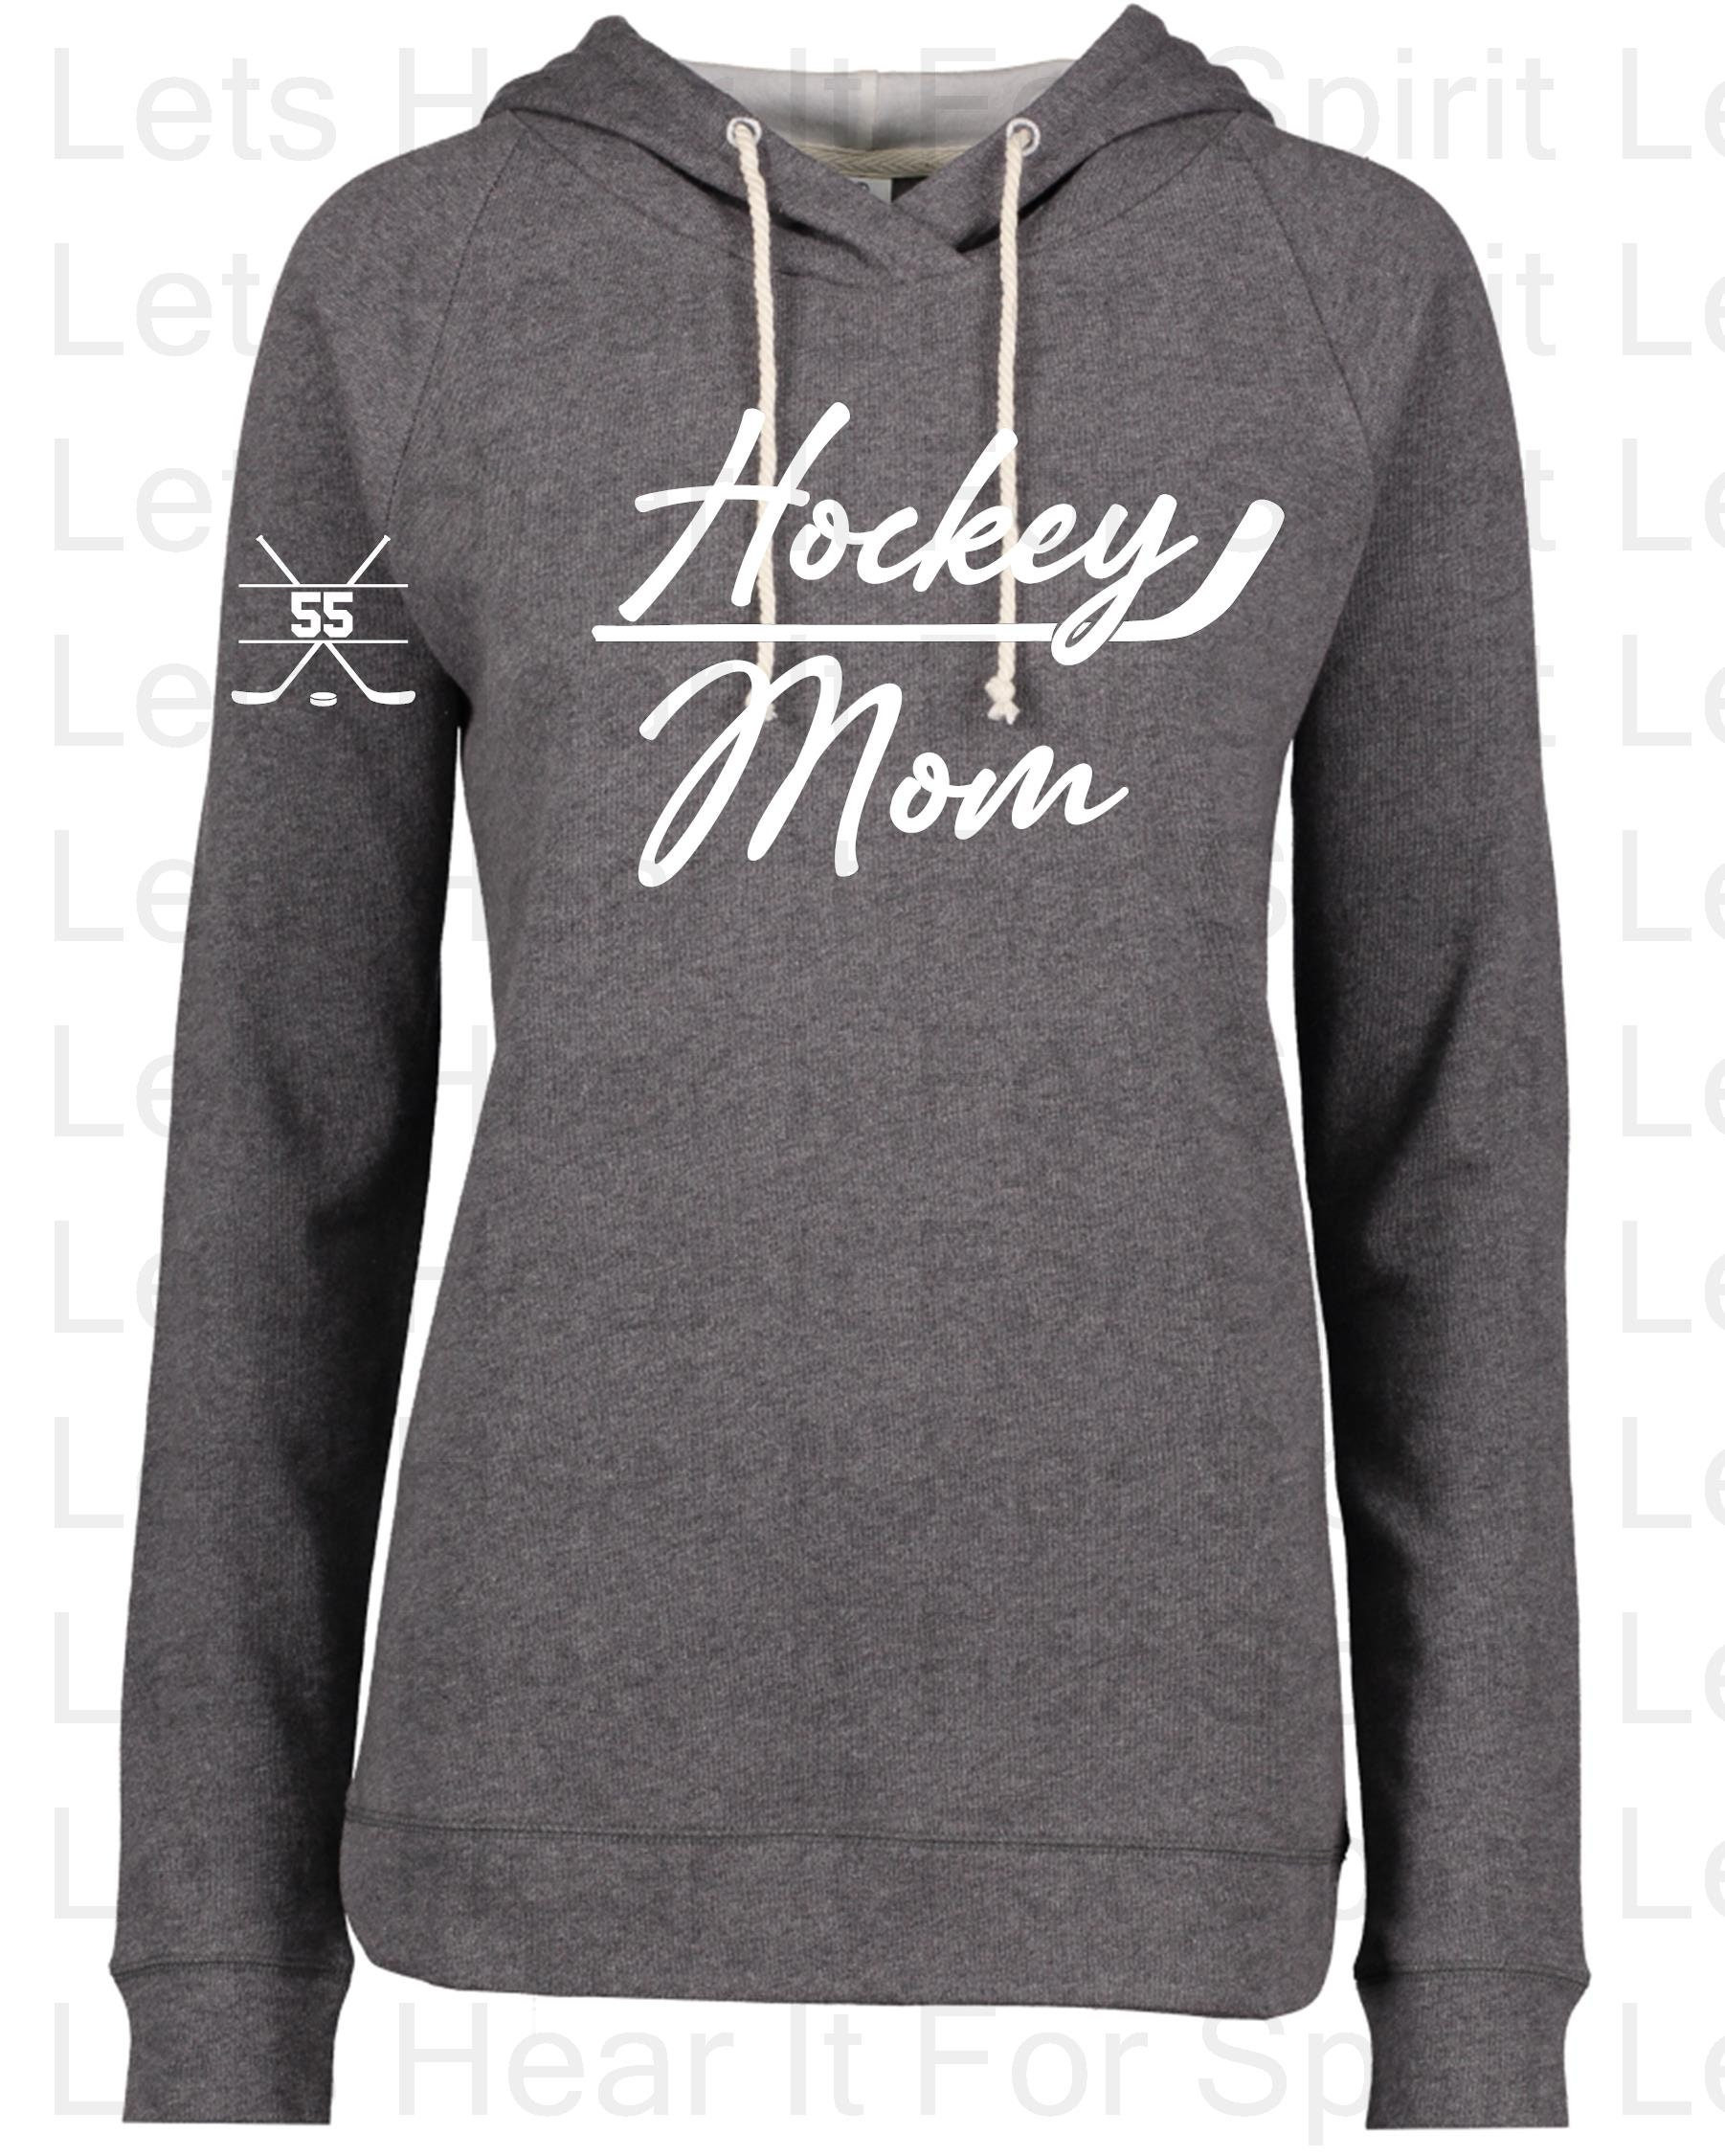 New I ❤️ hockey moms Hoodies! LINK IN BIO! #hockeybenders pop